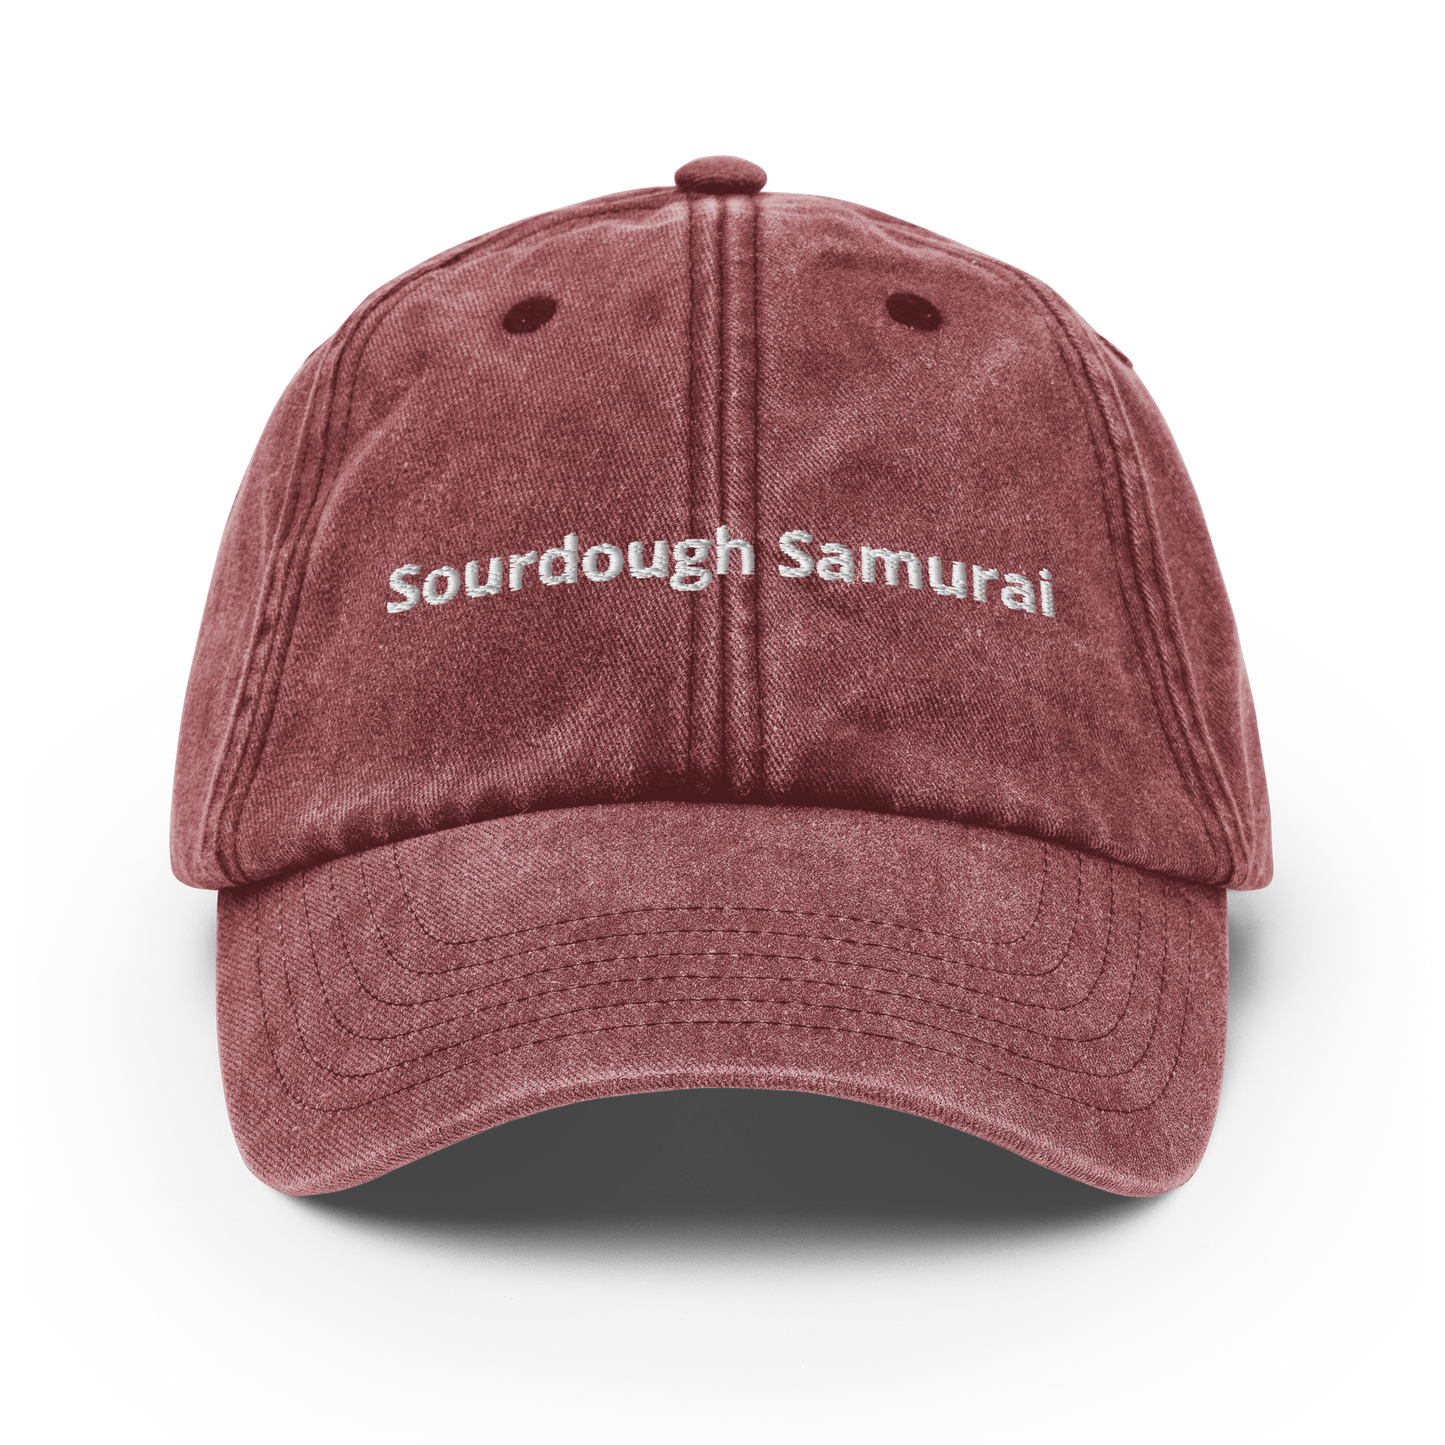 Sourdough Samurai - Vintage Hat